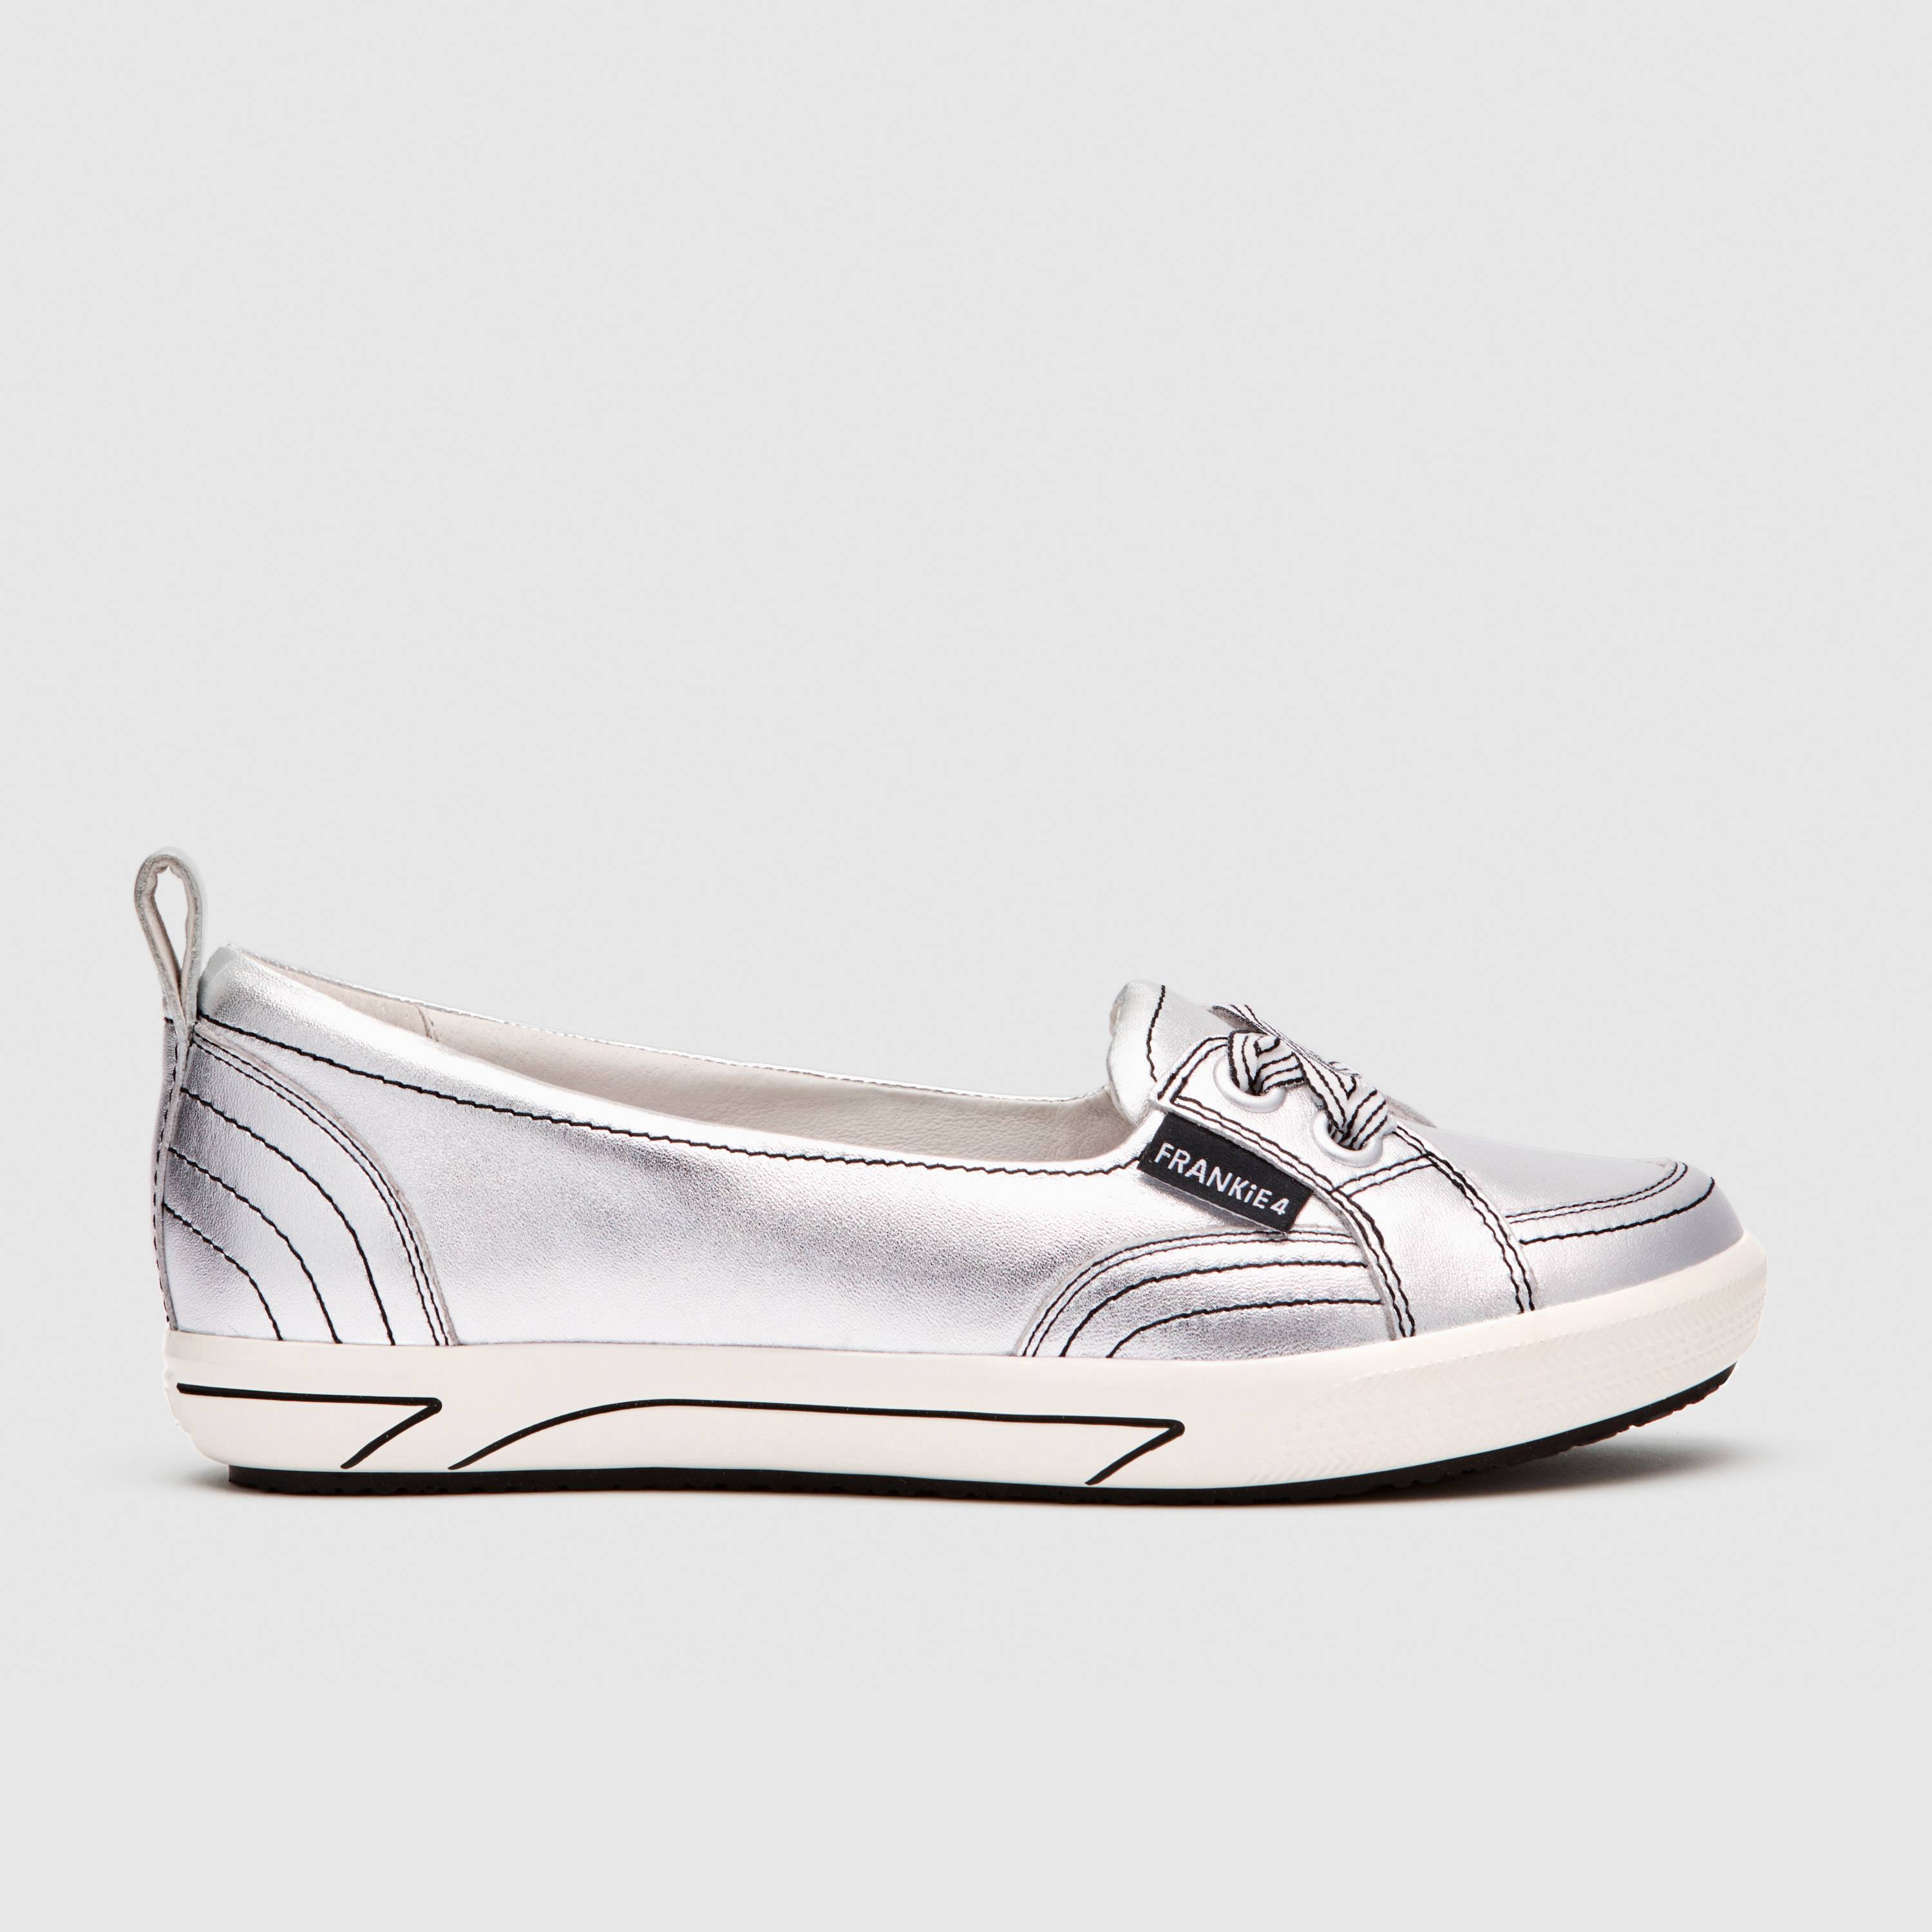 Shop Women's Silver Sneakers Online in Australia